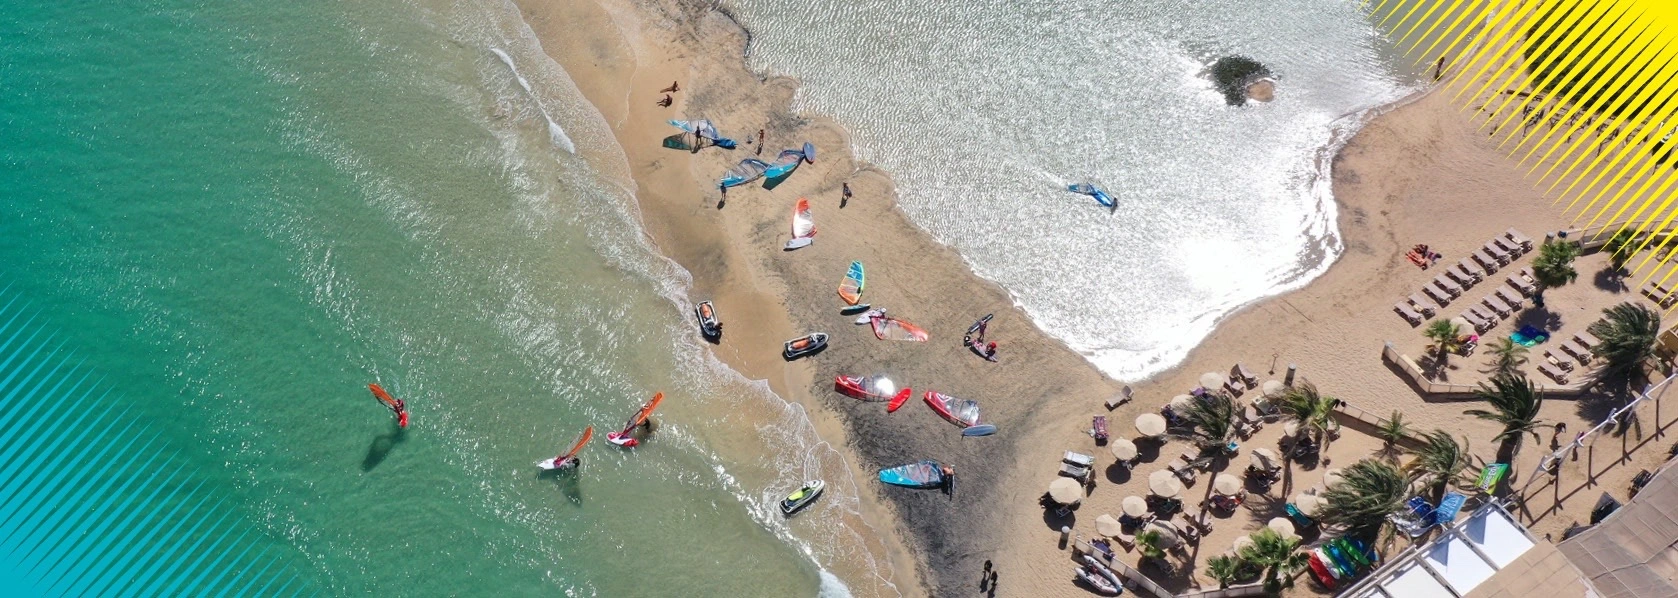 Fuerteventura-raj-dla-miłośników-windsurfingu-i-kitesurfingu-wyjazdy-z-FunSurf-_4_